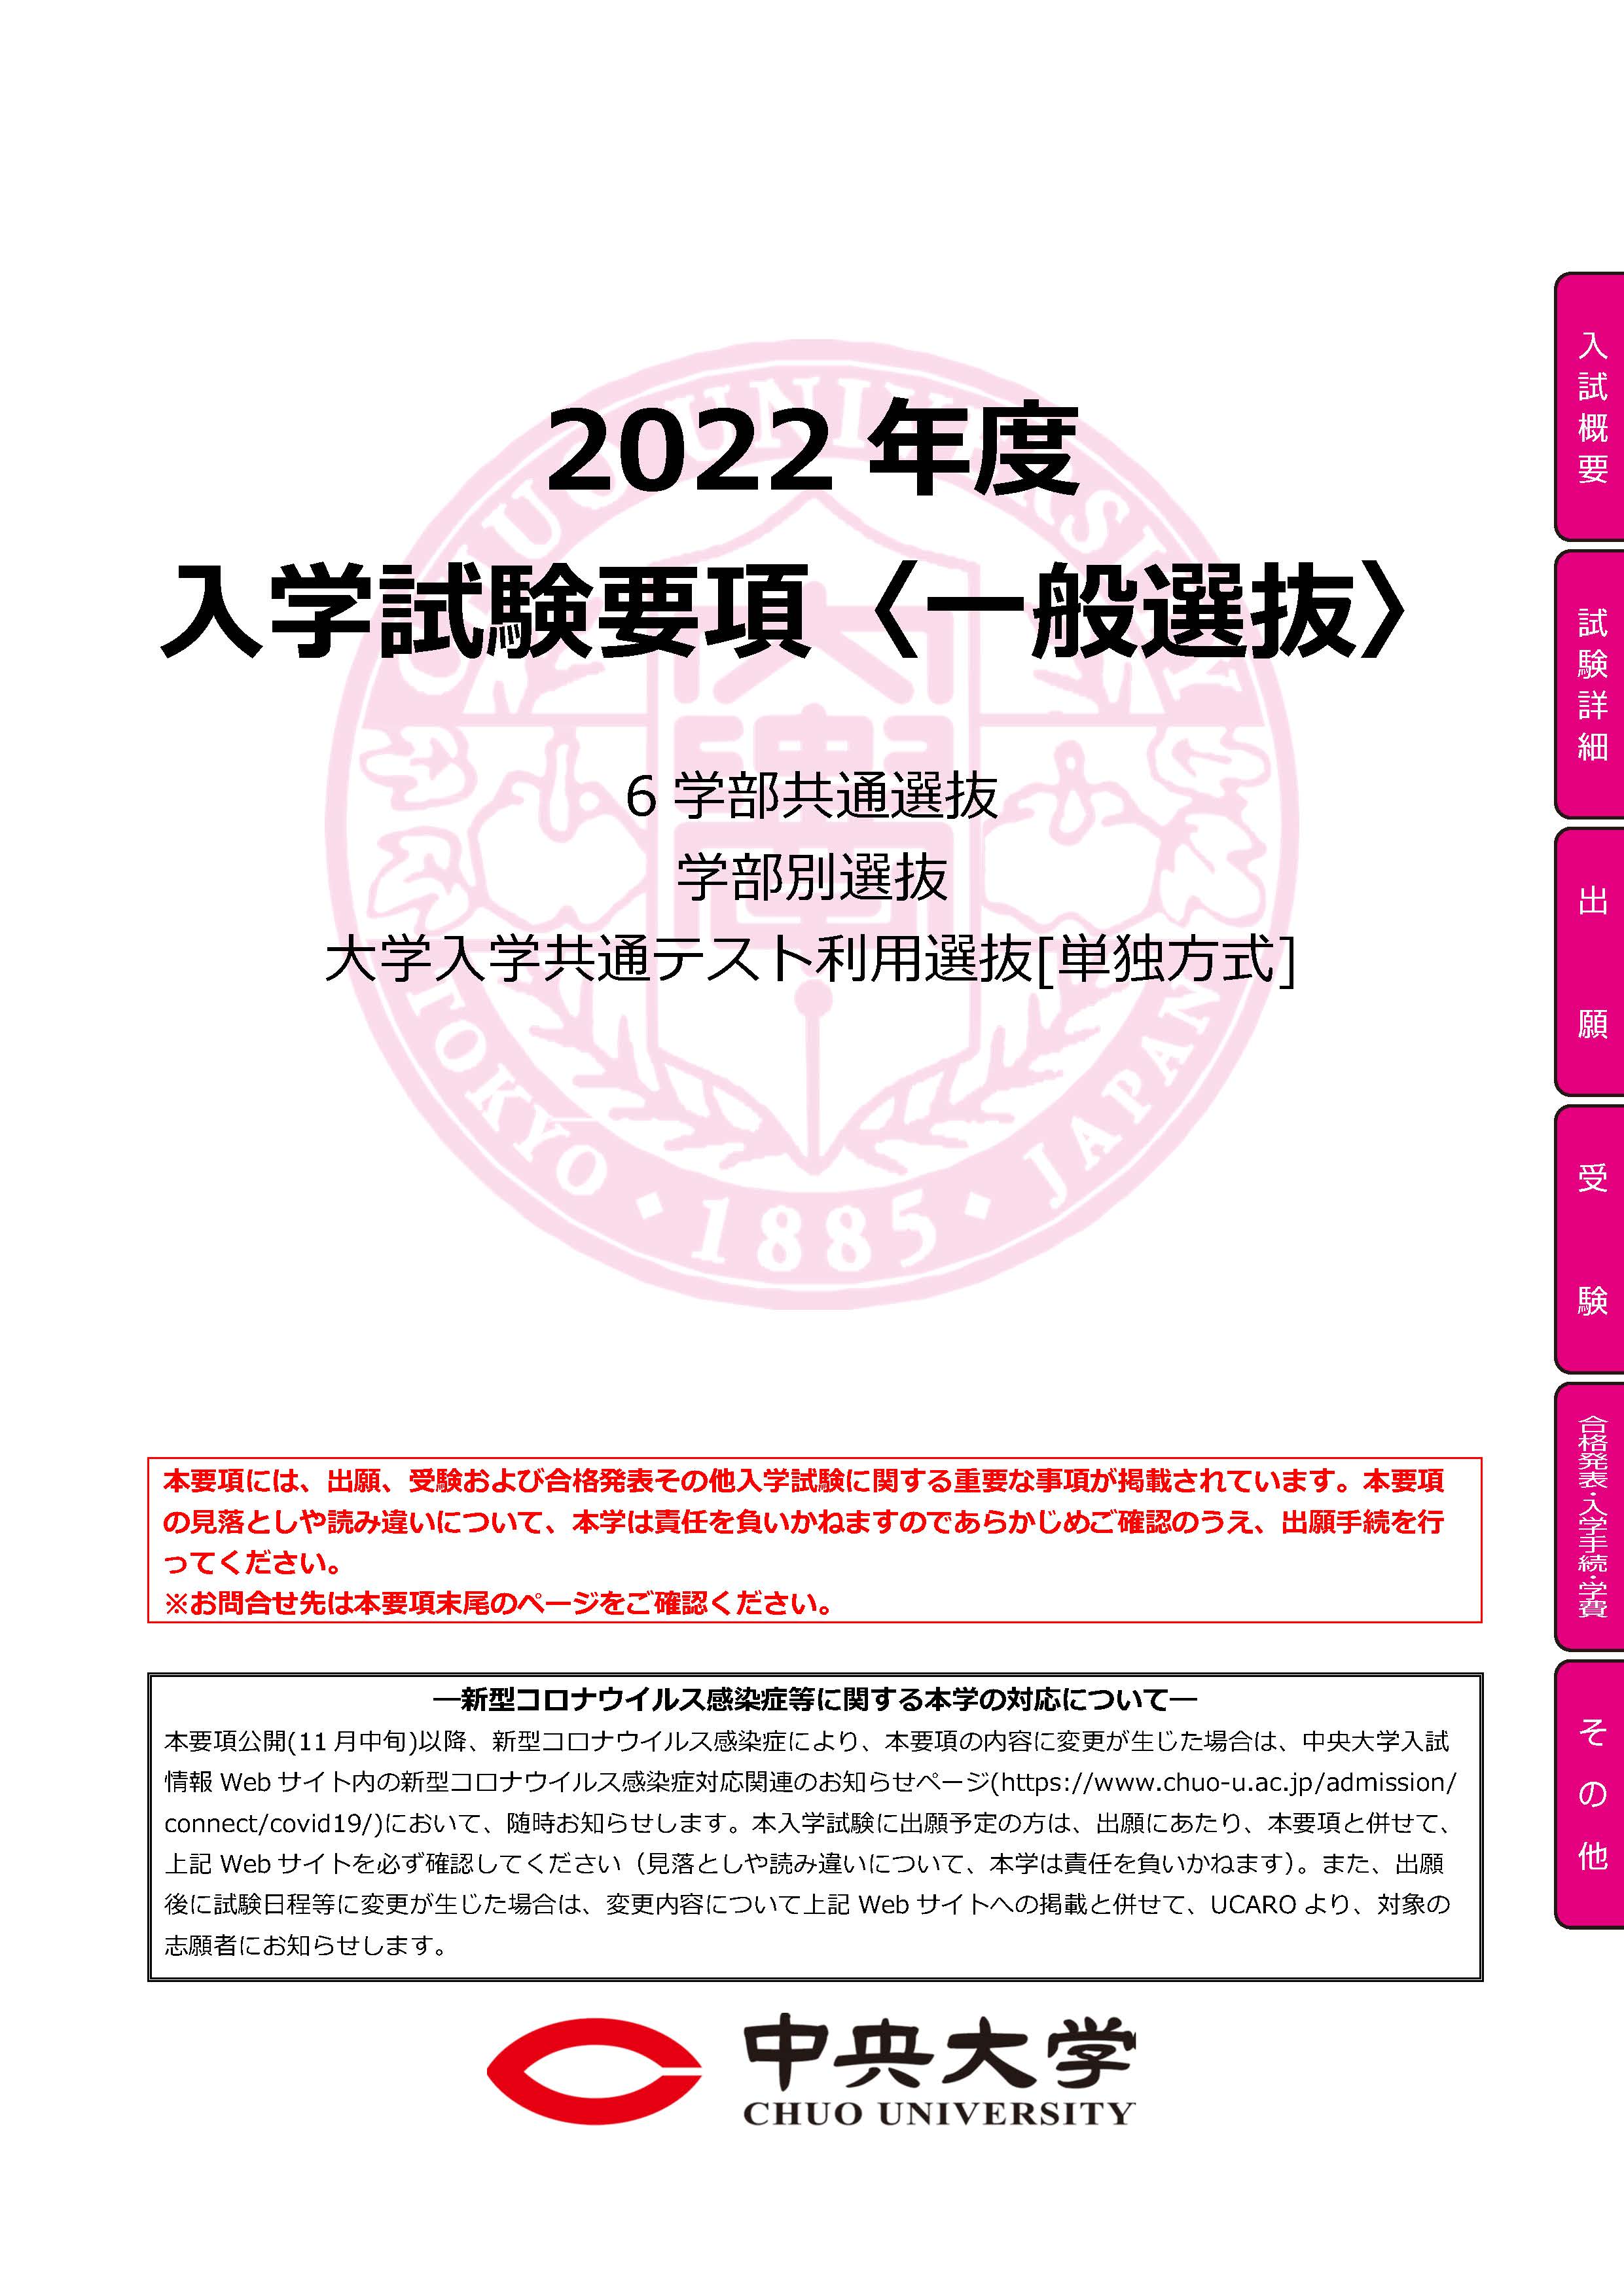 2022年度 入学試験要項<一般選抜>PDF